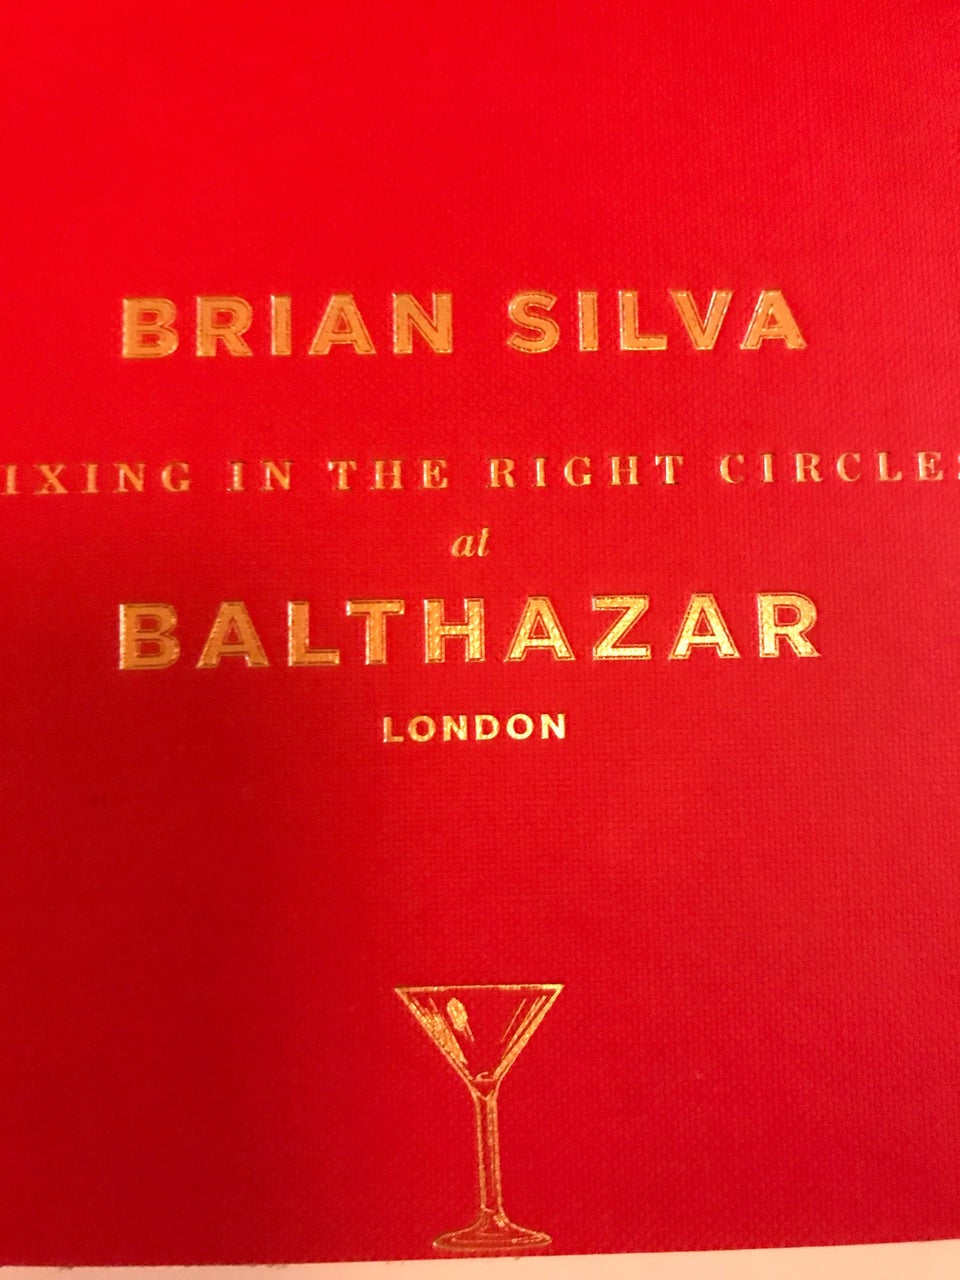 Photo of Balthazar